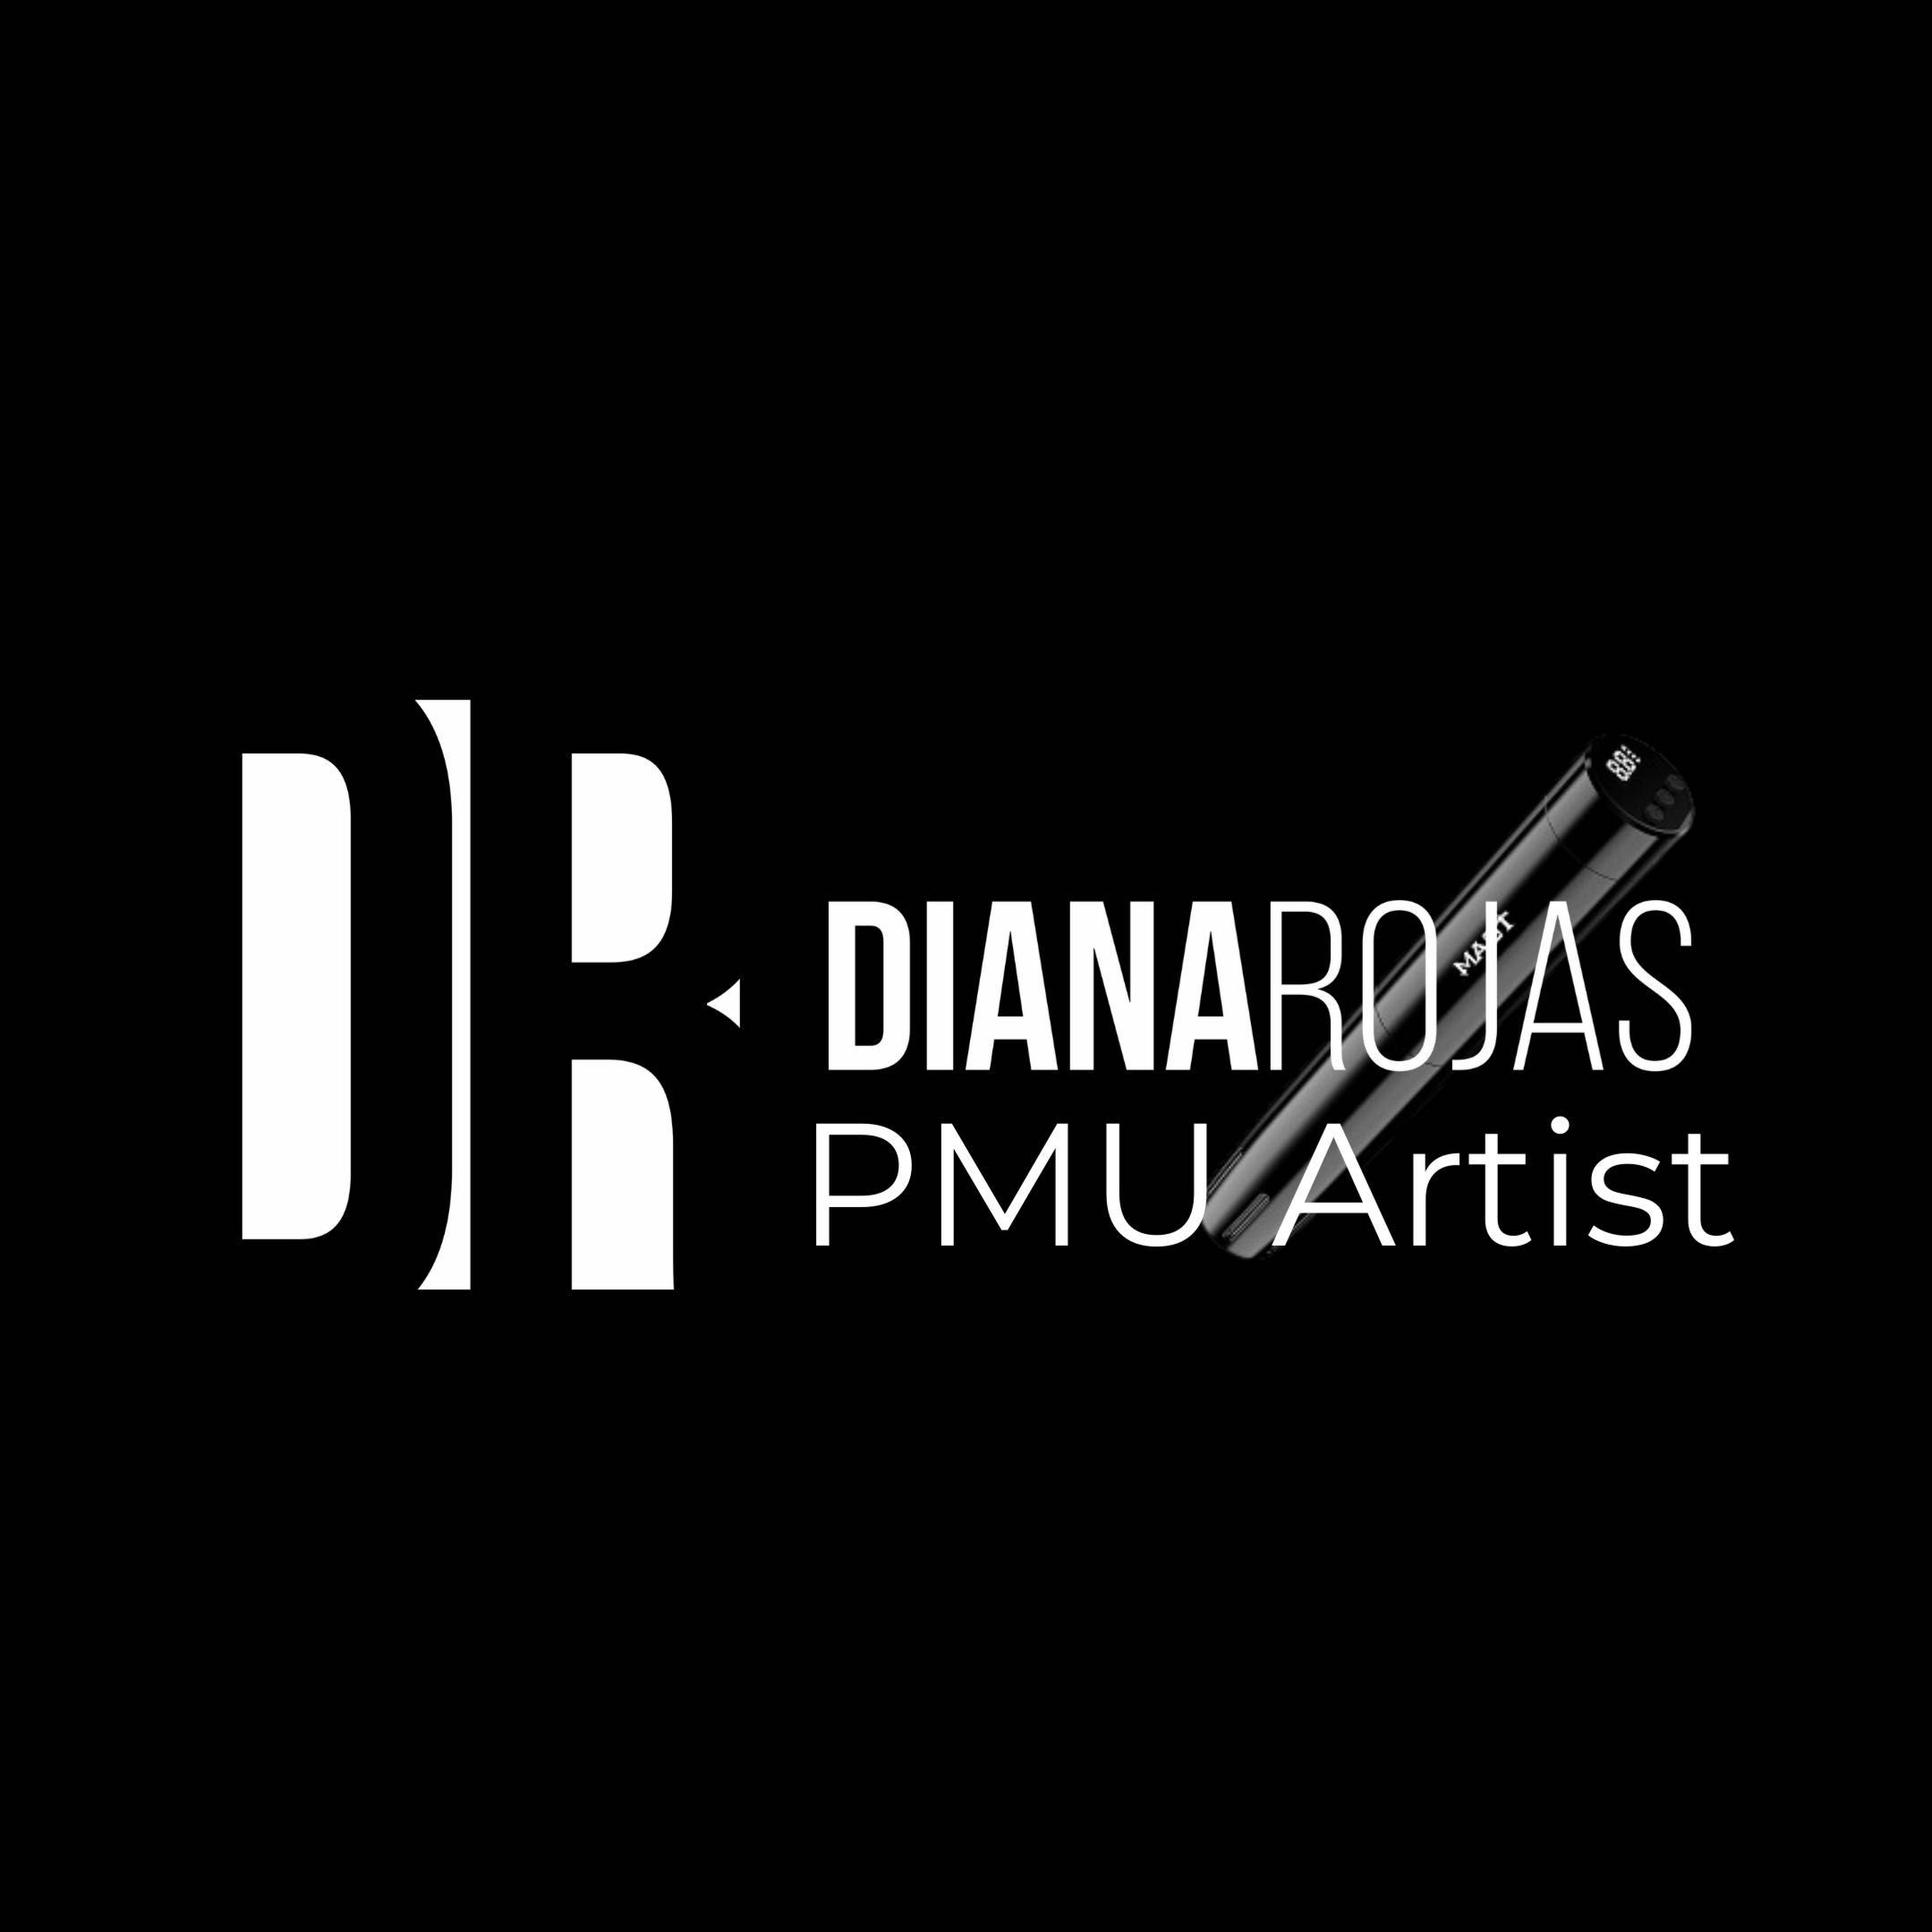 Diana Rojas PMU Artist, 5901 NW 151st St, Suite 105, Miami Lakes, 33014